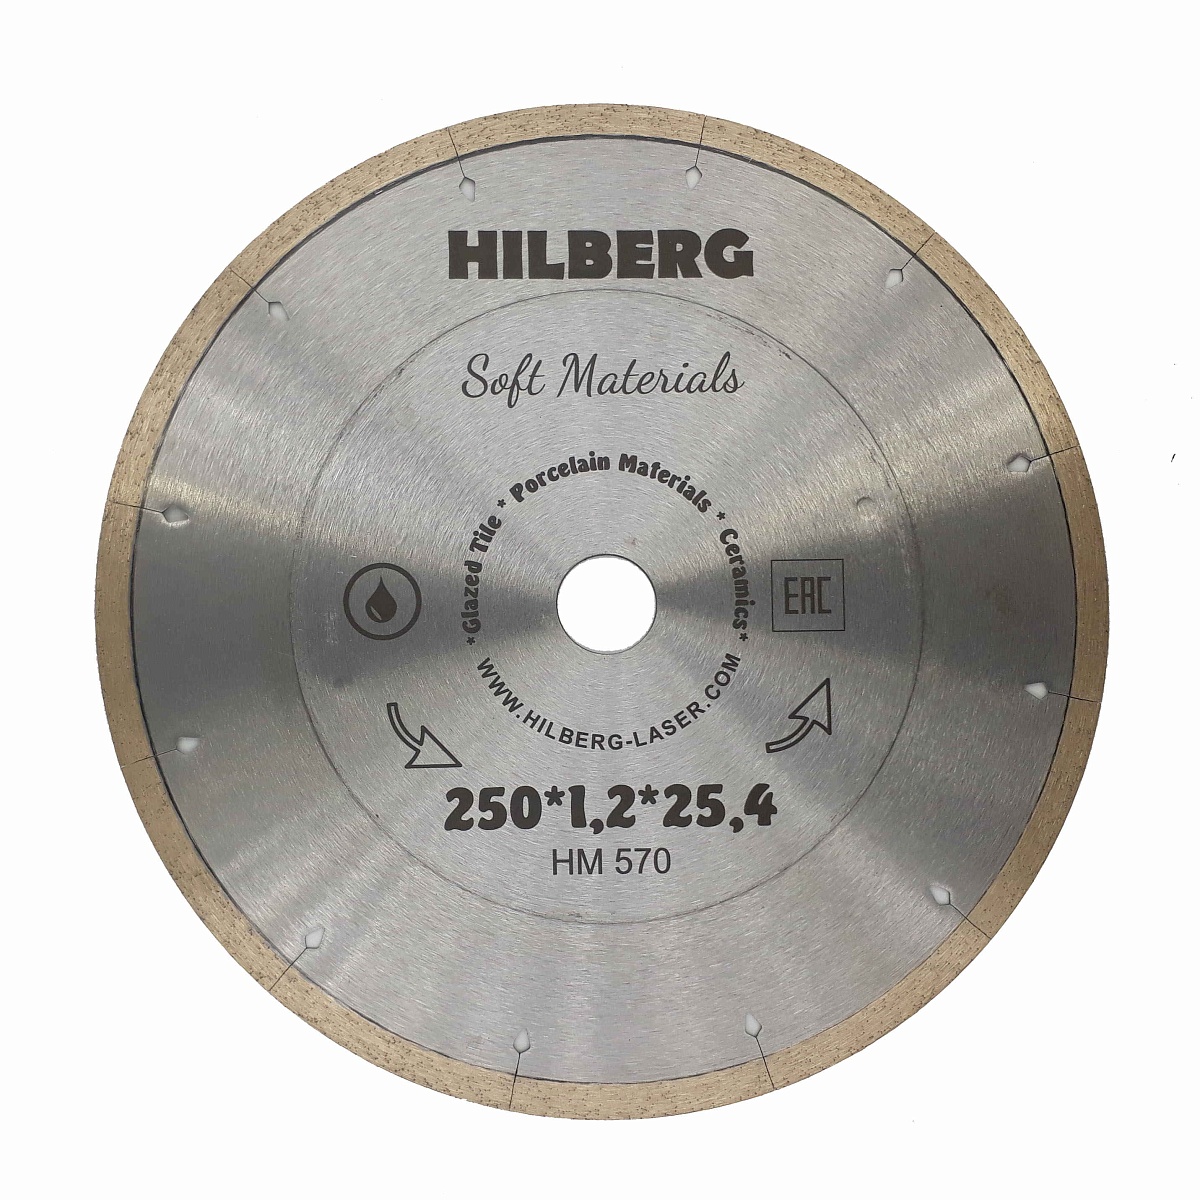 Hilberg сплошной ультратонкий серия Soft Materials Hyper Thin